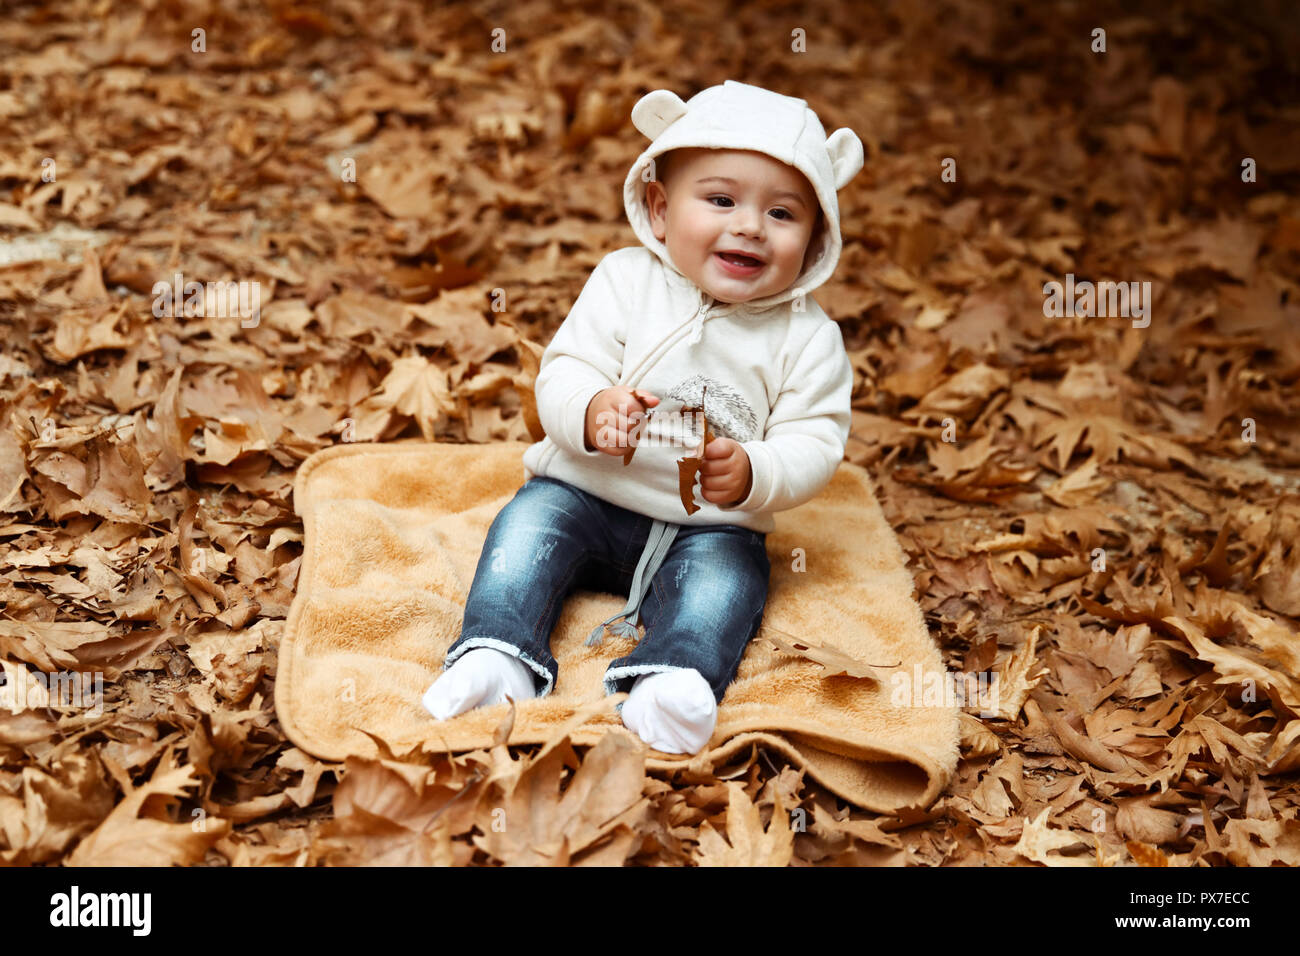 Cute fröhliches Kind Spaß im Herbst Park, süße, kleine Junge sitzt auf dem Boden mit trockenen Baum Blättern bedeckt, fröhliches Kind genießen Herbst Meere Stockfoto